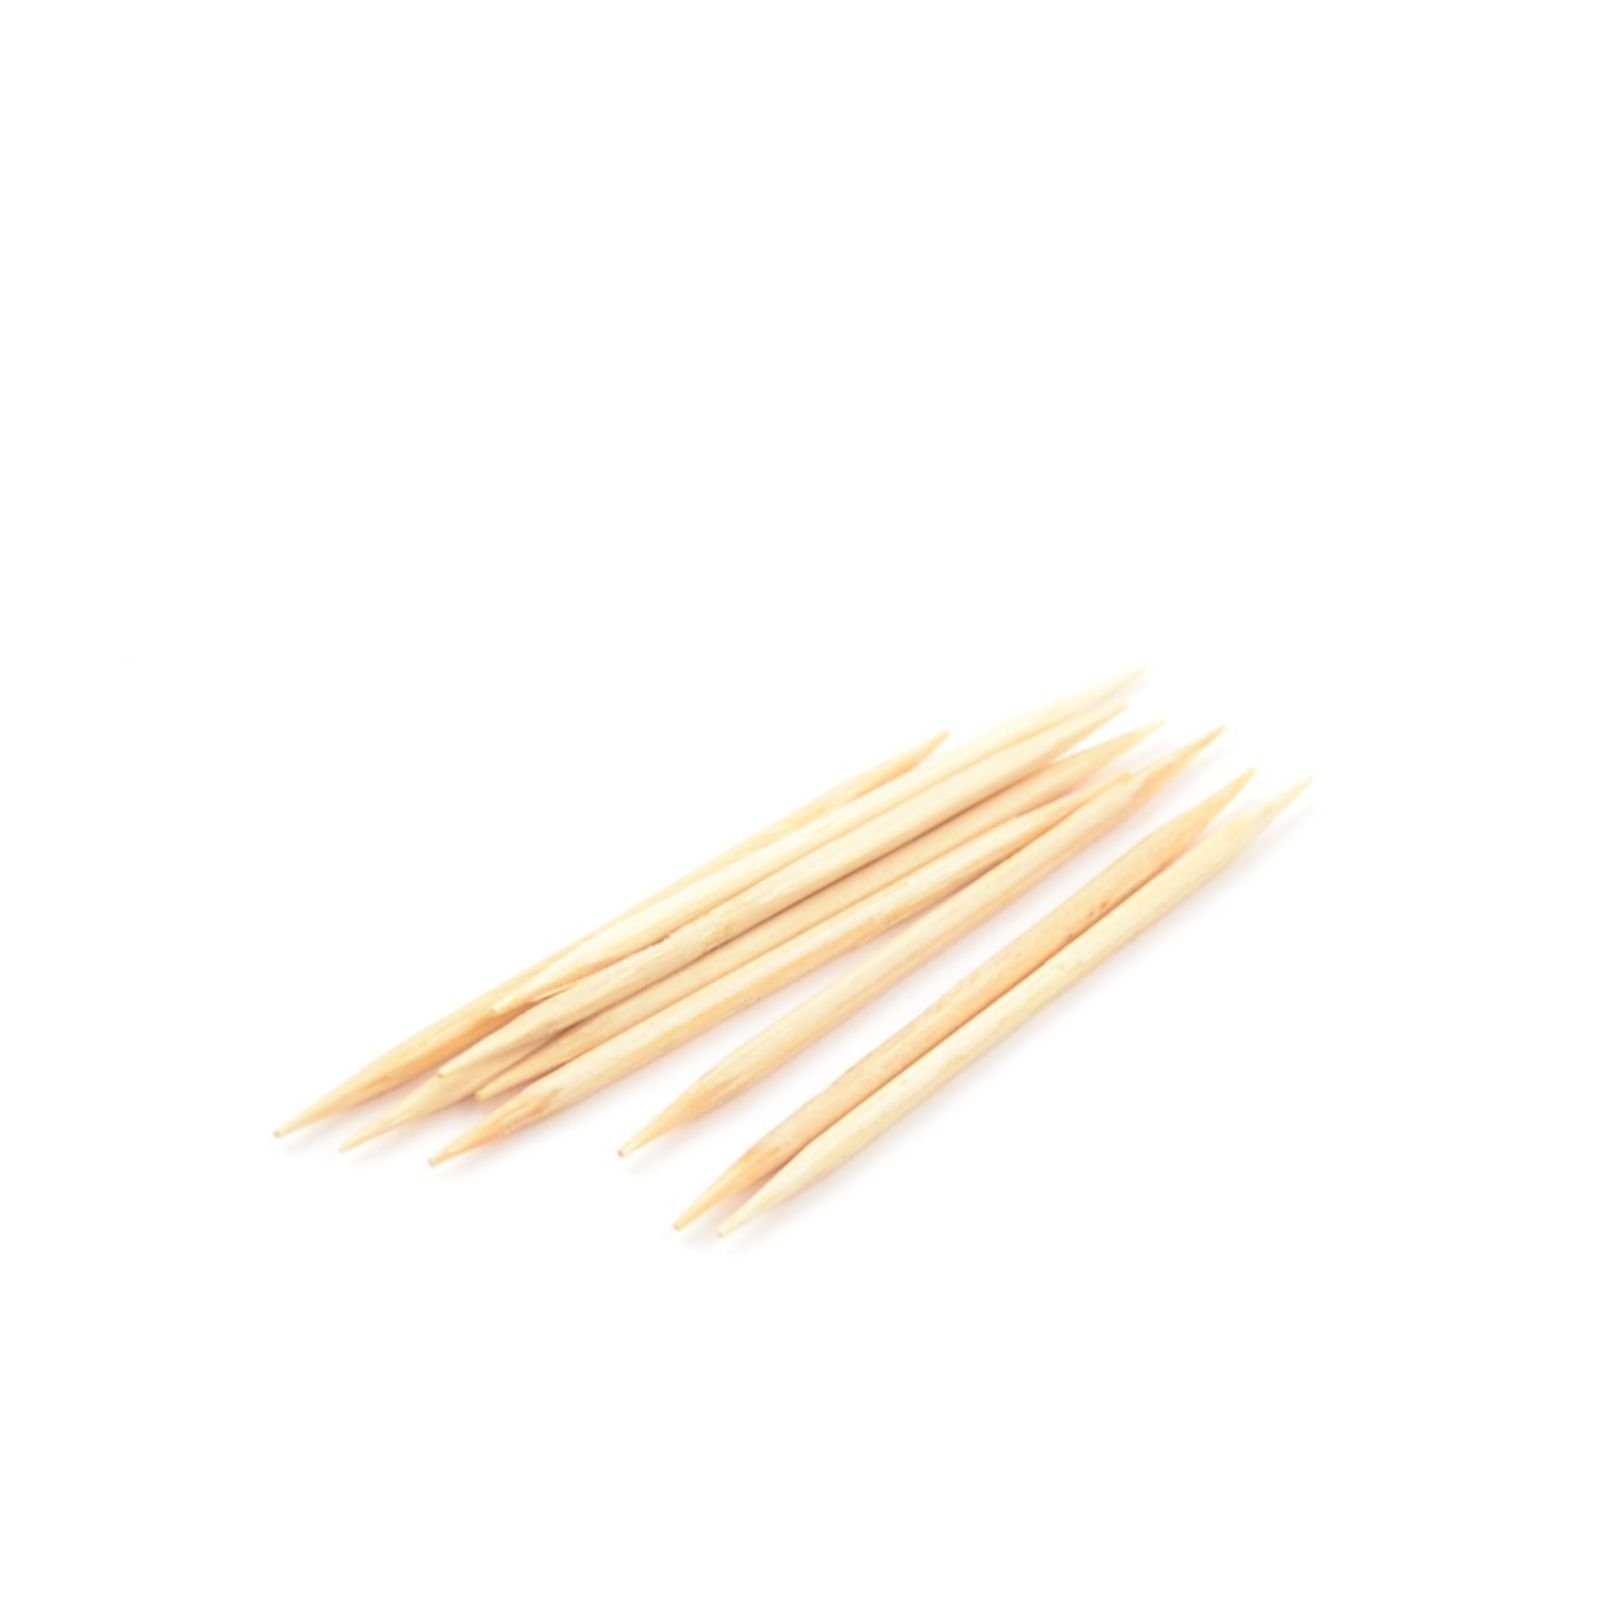 Einweggeschirr-Set 1000 Stück Zahnstocher aus Bambus, gehüllt (2 mm), 65 mm rund, einzeln in Papier gehüllten, 2 Spitzen, poliert